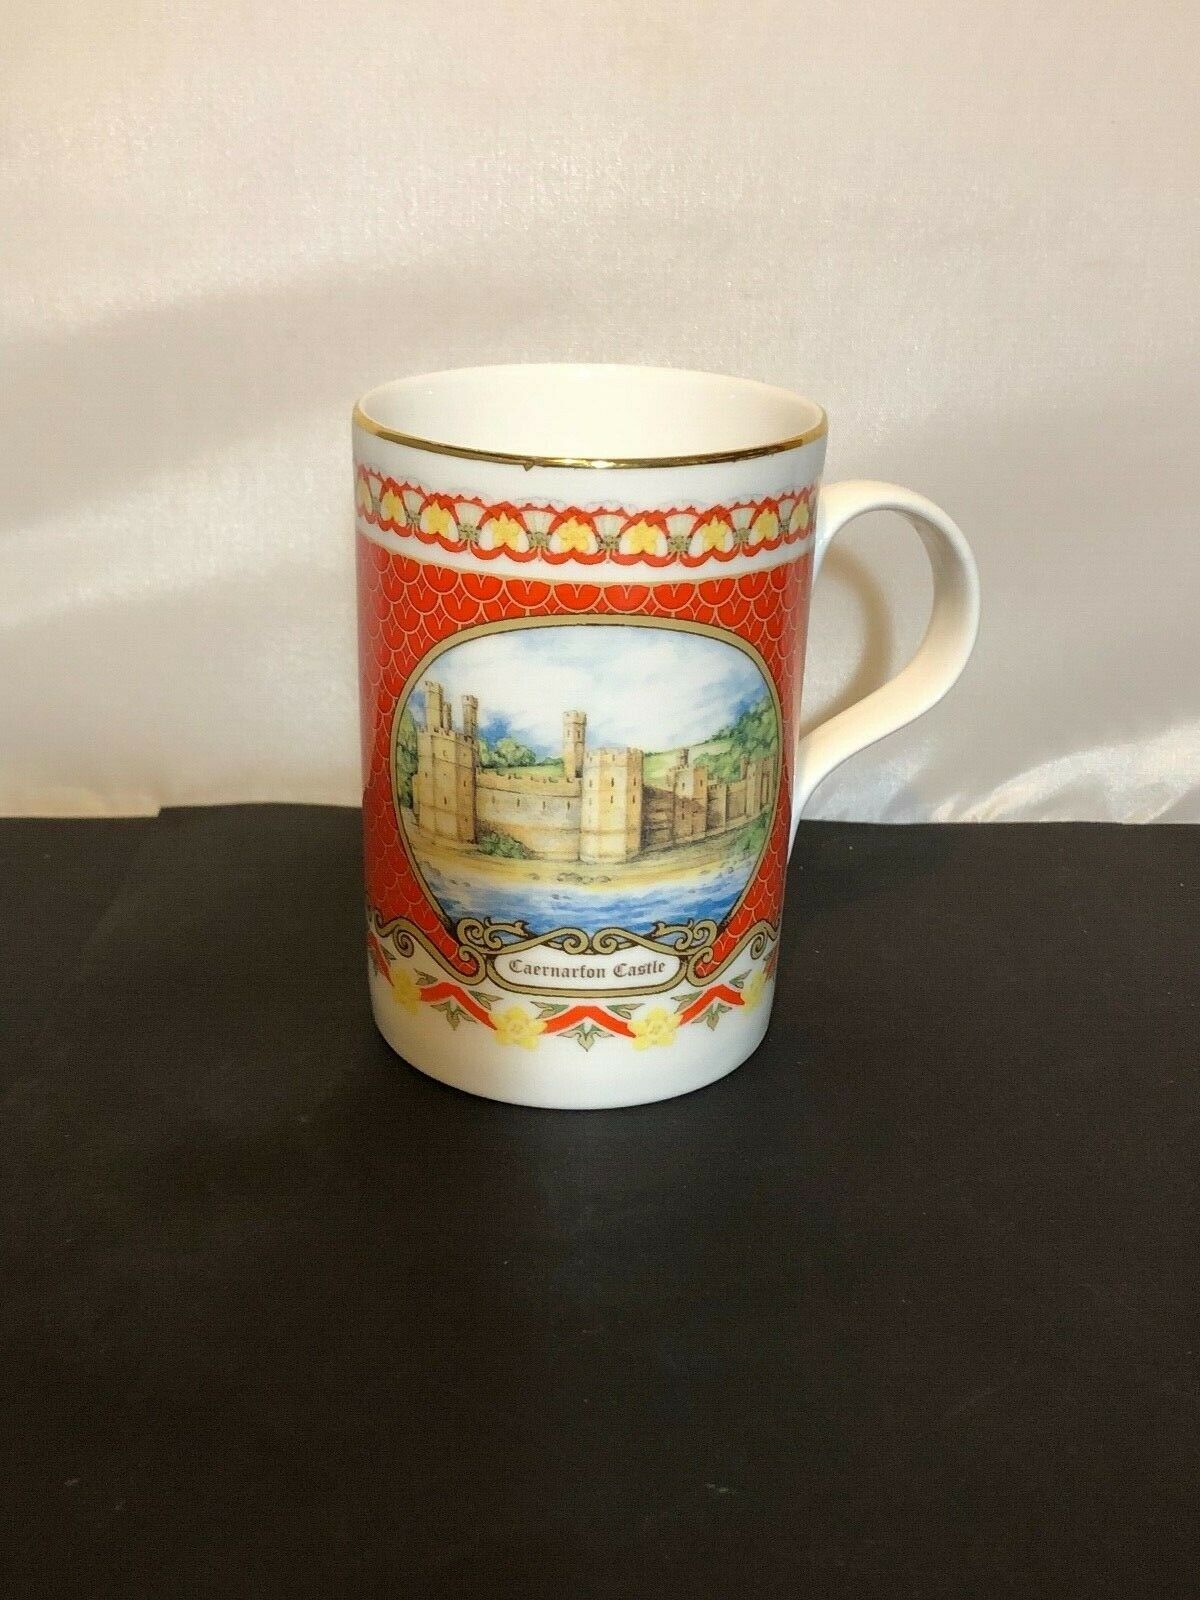 James Sadler Caernarfon Castle Mug